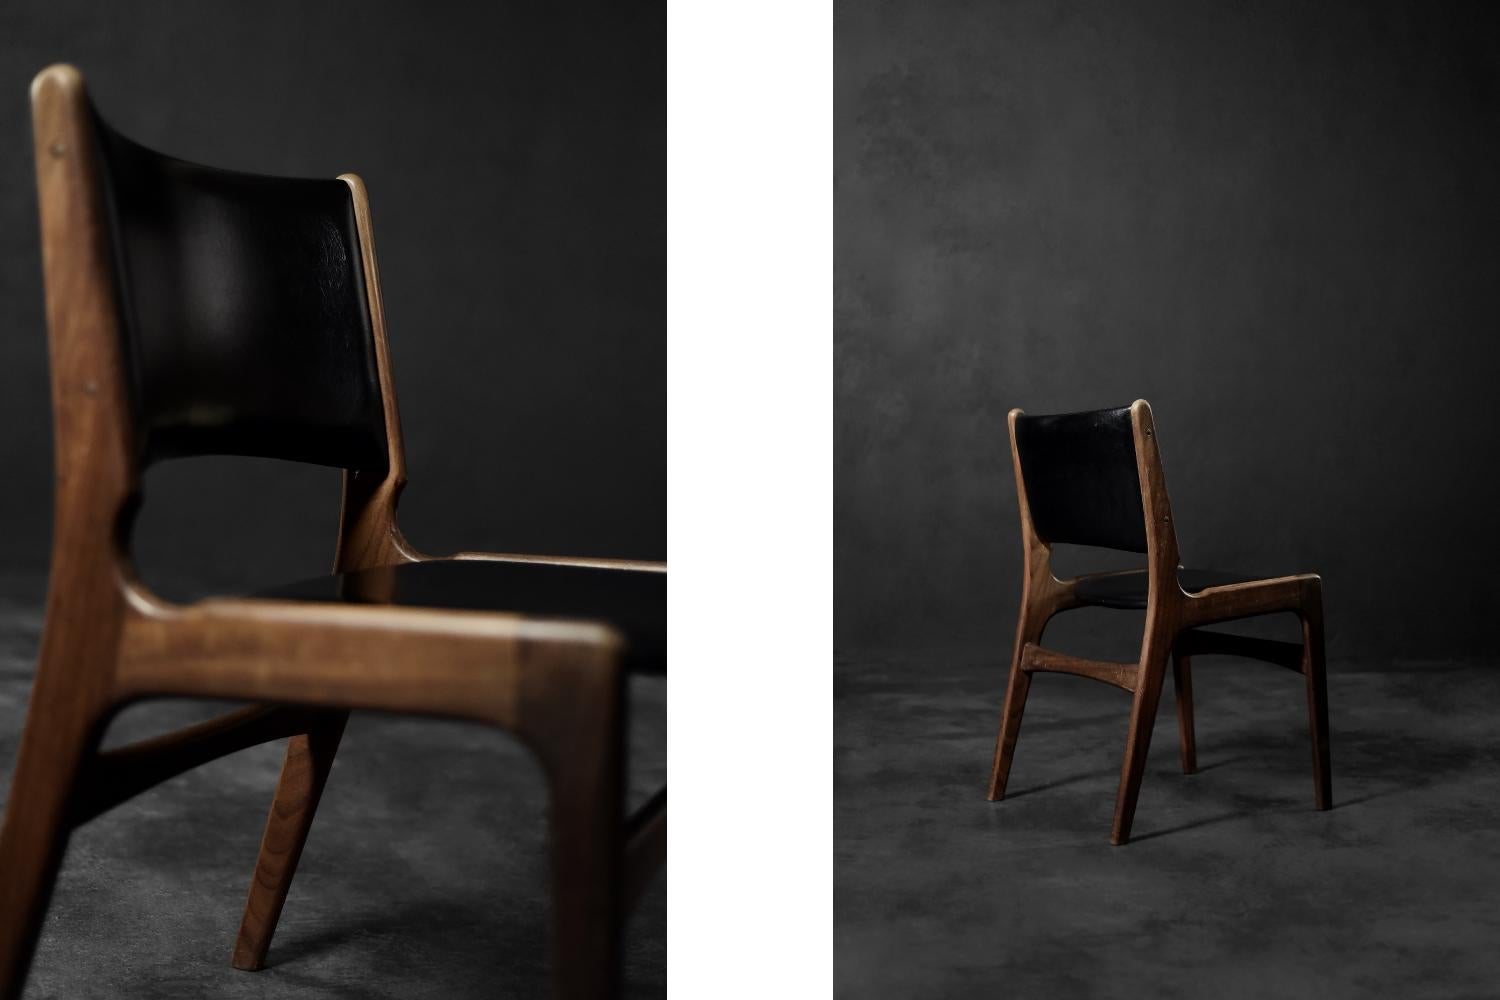 Cette chaise moderniste a été conçue par Erik Buch pour le fabricant danois Anderstrup Møbelfabrik dans les années 1950. Il s'agit du modèle 89. Fabriqué en bois de teck de haute qualité dans une teinte brune foncée. L'assise et le dossier,